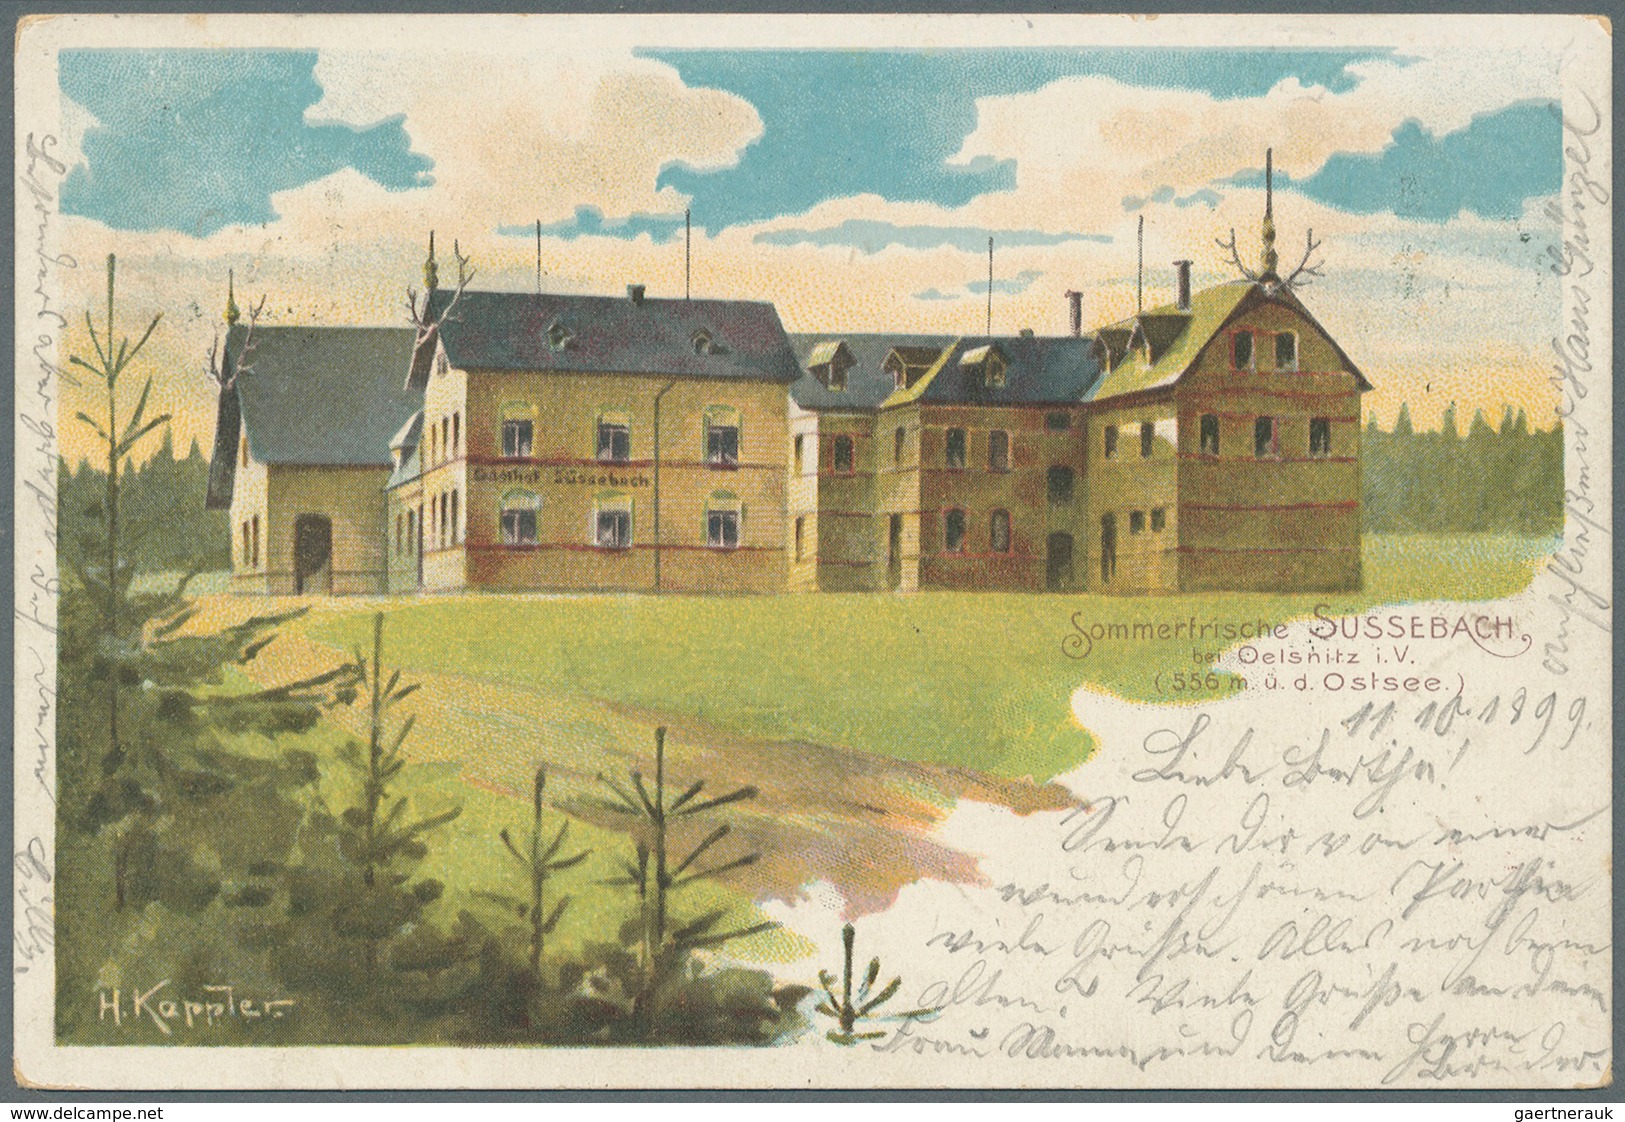 Ansichtskarten: Sachsen: VOGTLAND (alte PLZ 992 - 993) mit u.a. Oelsnitz, Adorf, Bad Brambach und Ba